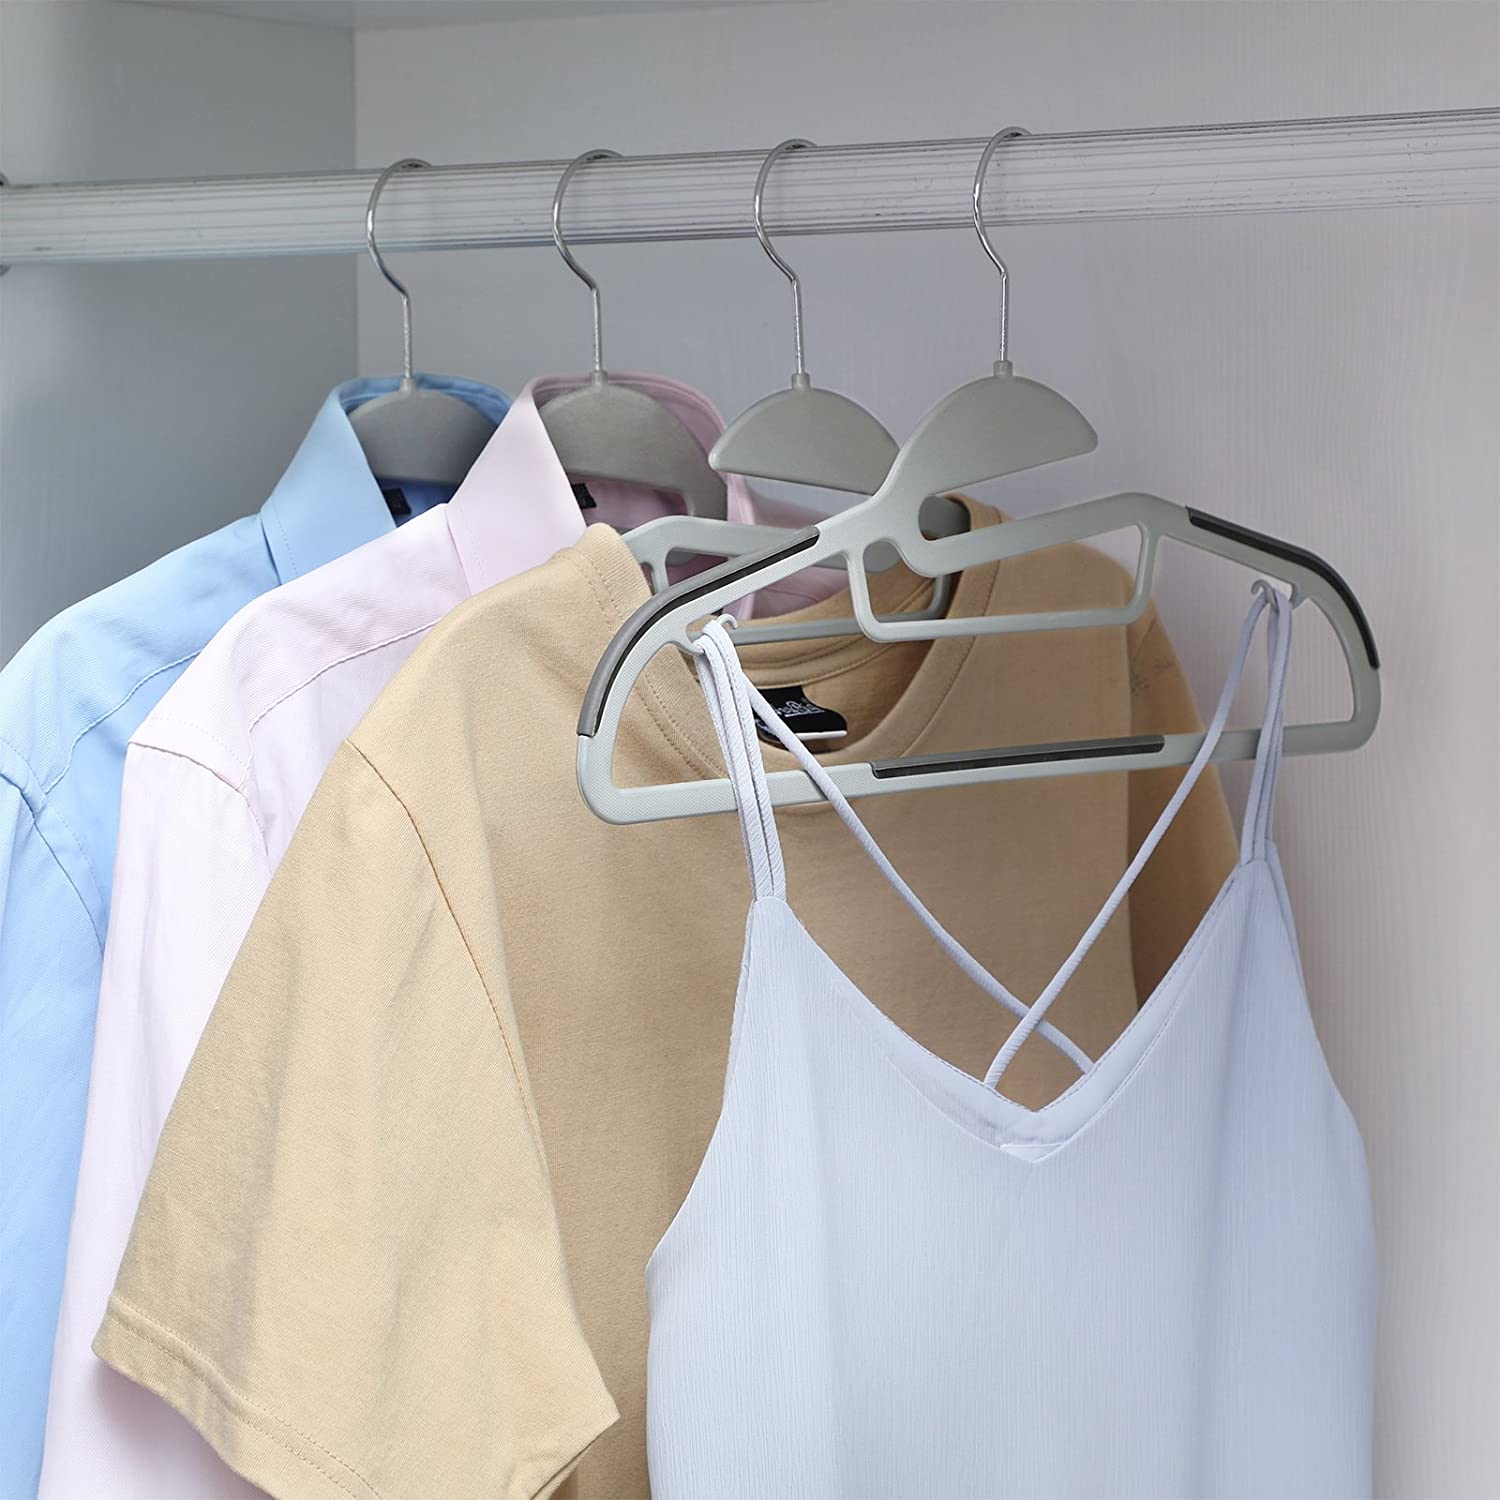 Nancy's Clothes Hanger Set of 20 Pieces - Anti Slip - Clothes Hangers